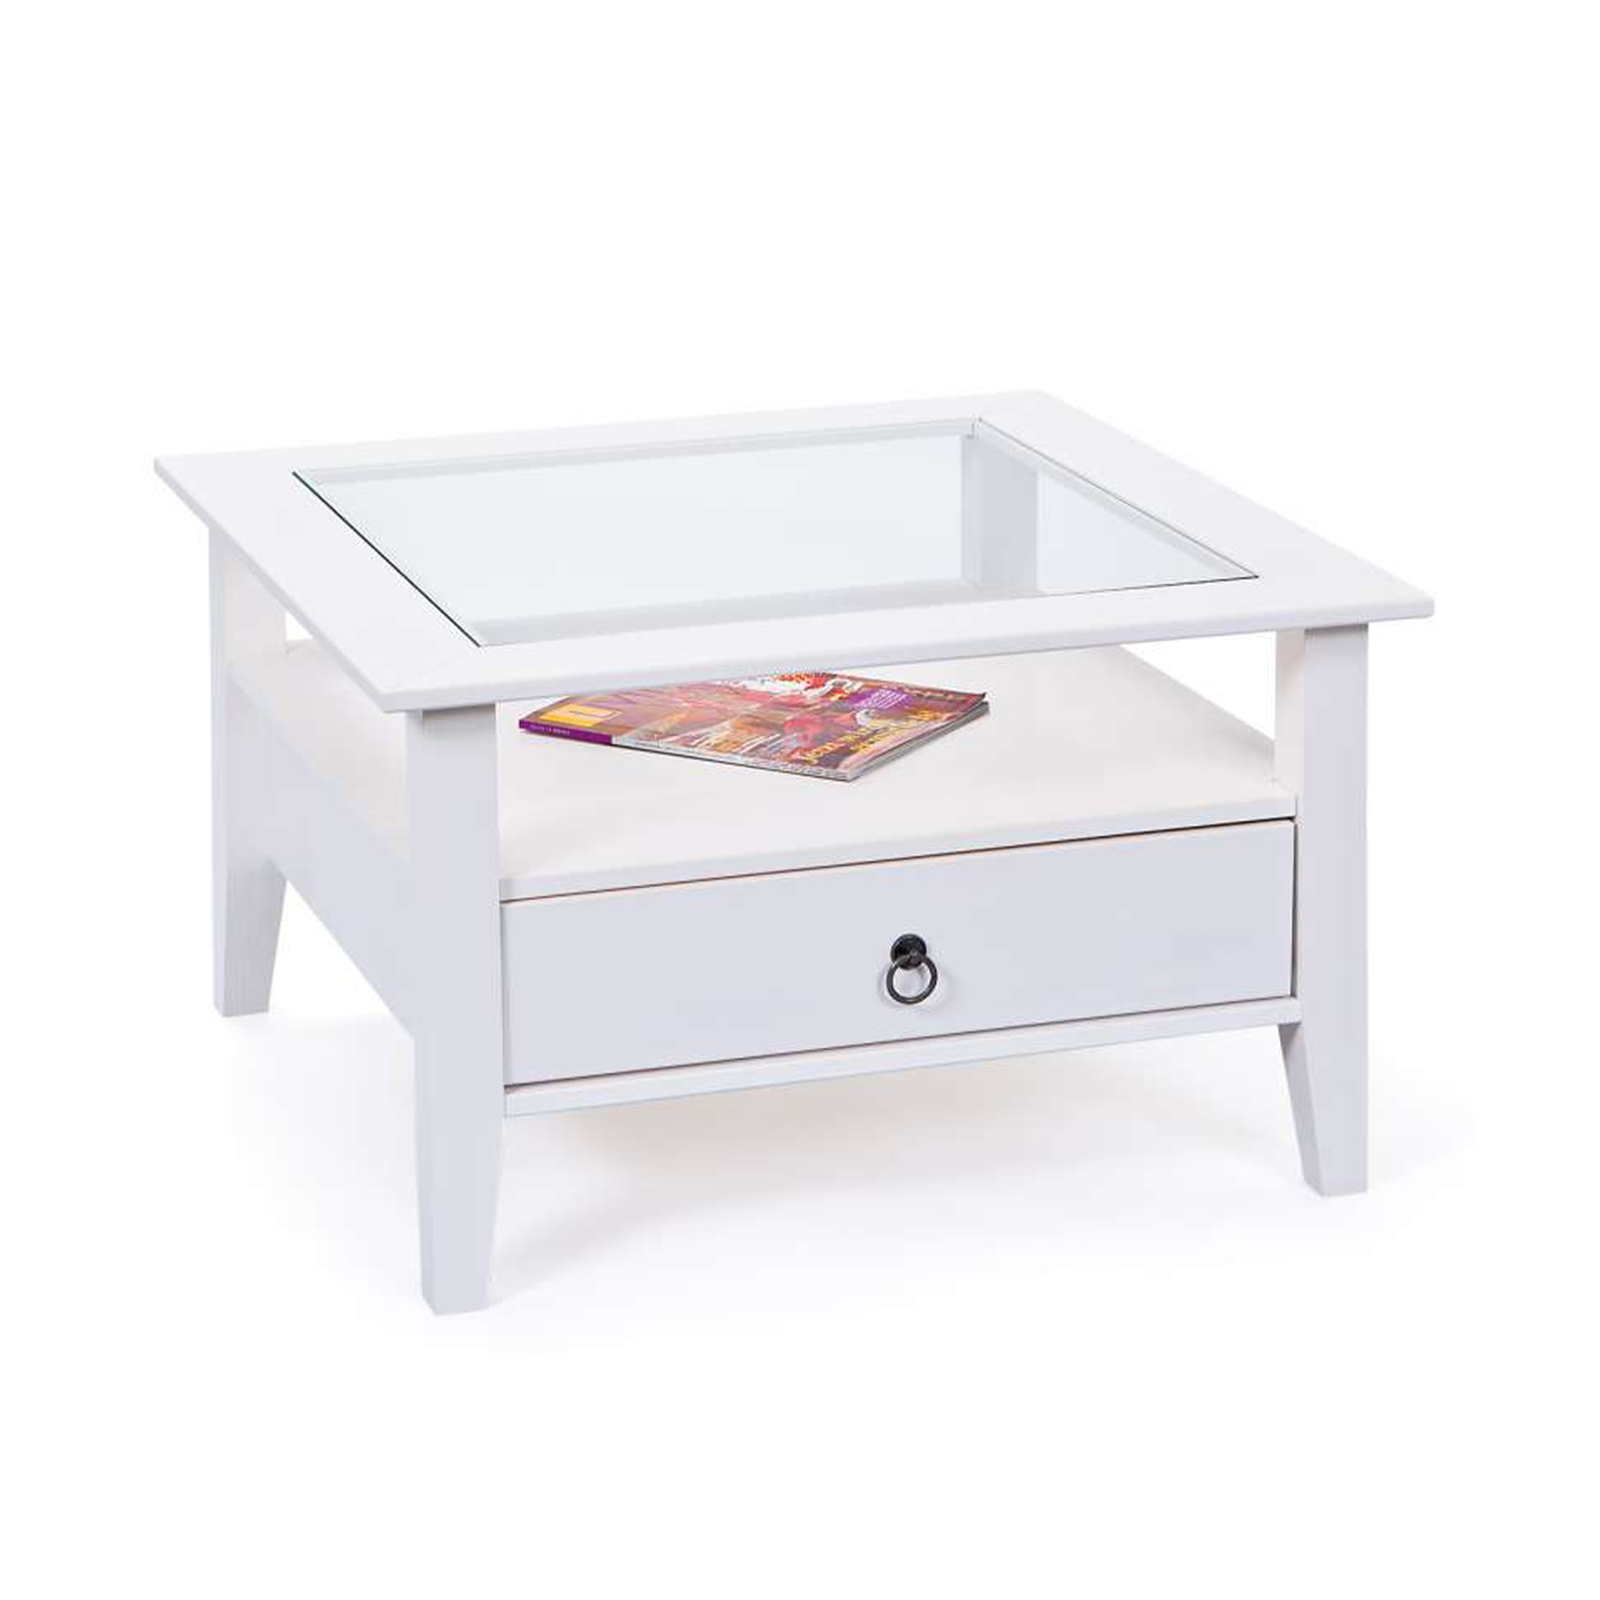 Tavolino basso Provence da soggiorno in legno massello bianco con ripiano in vetro cm 75x75 45h